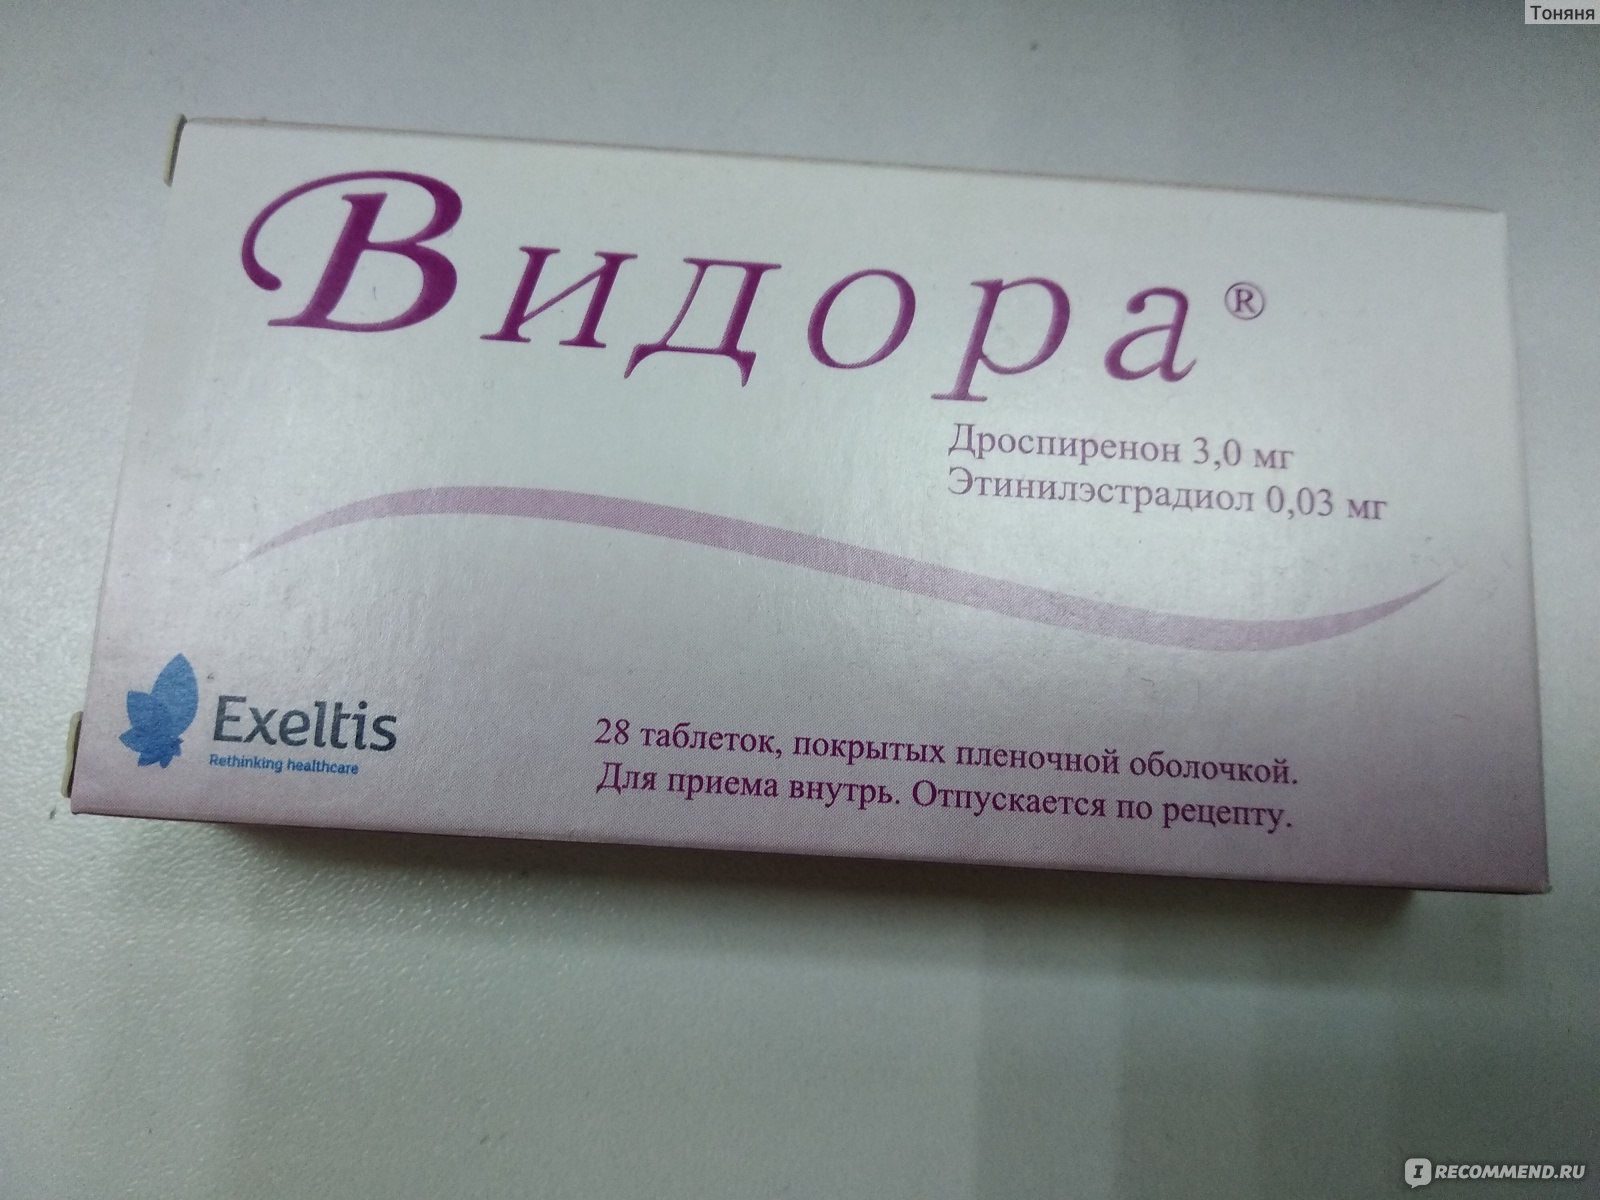 Видора микро таблетки. Противозачаточные Видора. Видора противозачаточный препарат. Таблетки контрацептивы Видора 21+7. Видора таблетки, покрытые пленочной оболочкой.